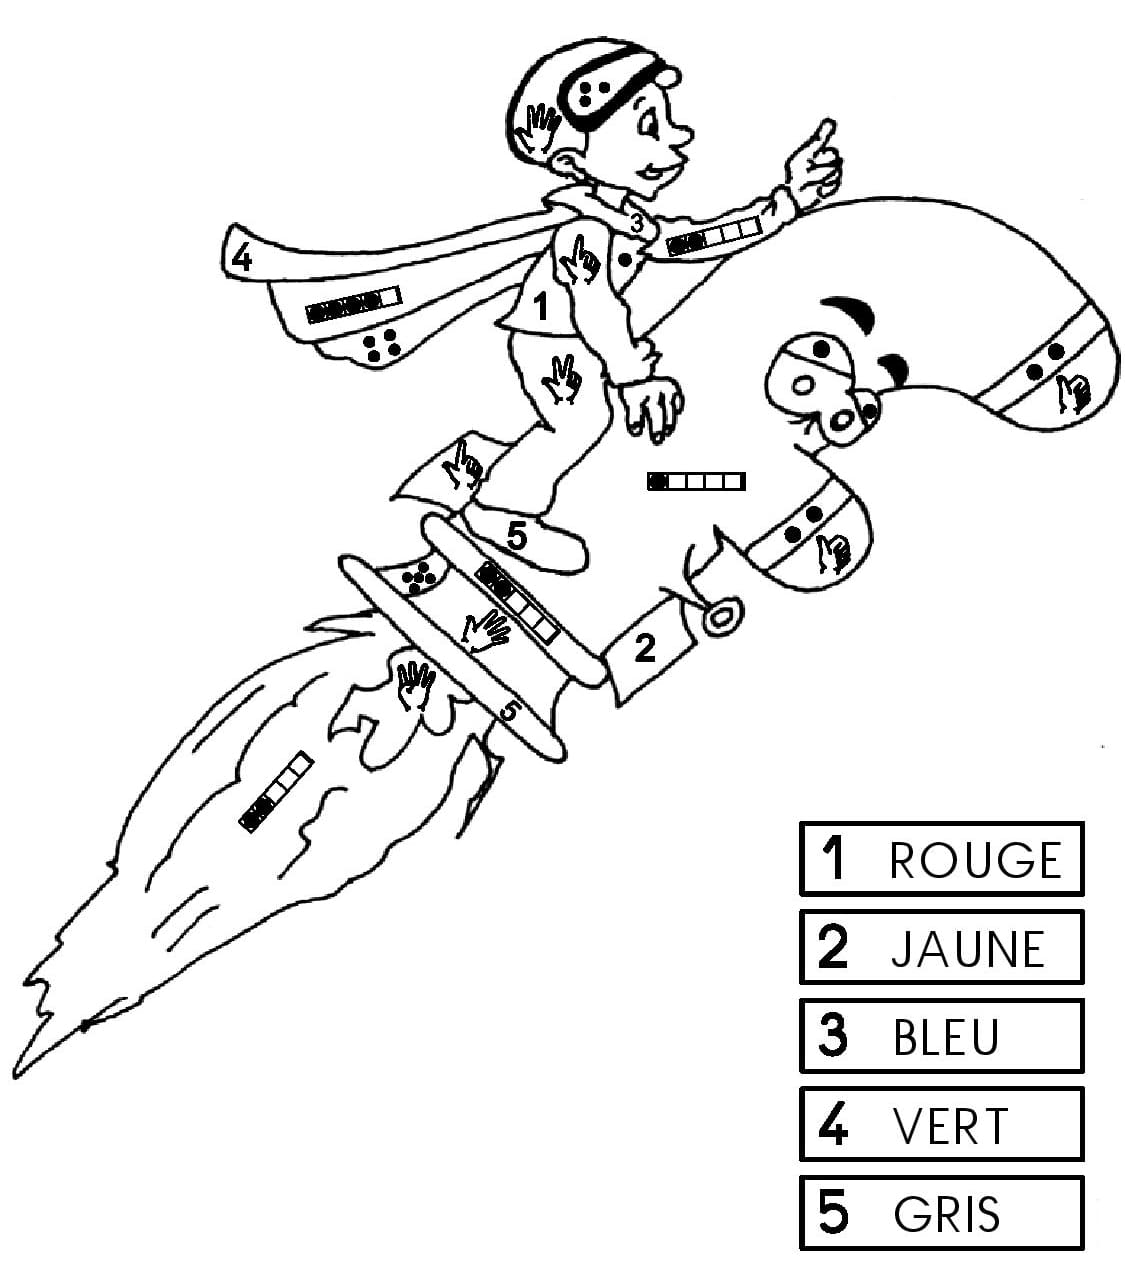 Magique CP Garçon coloring page